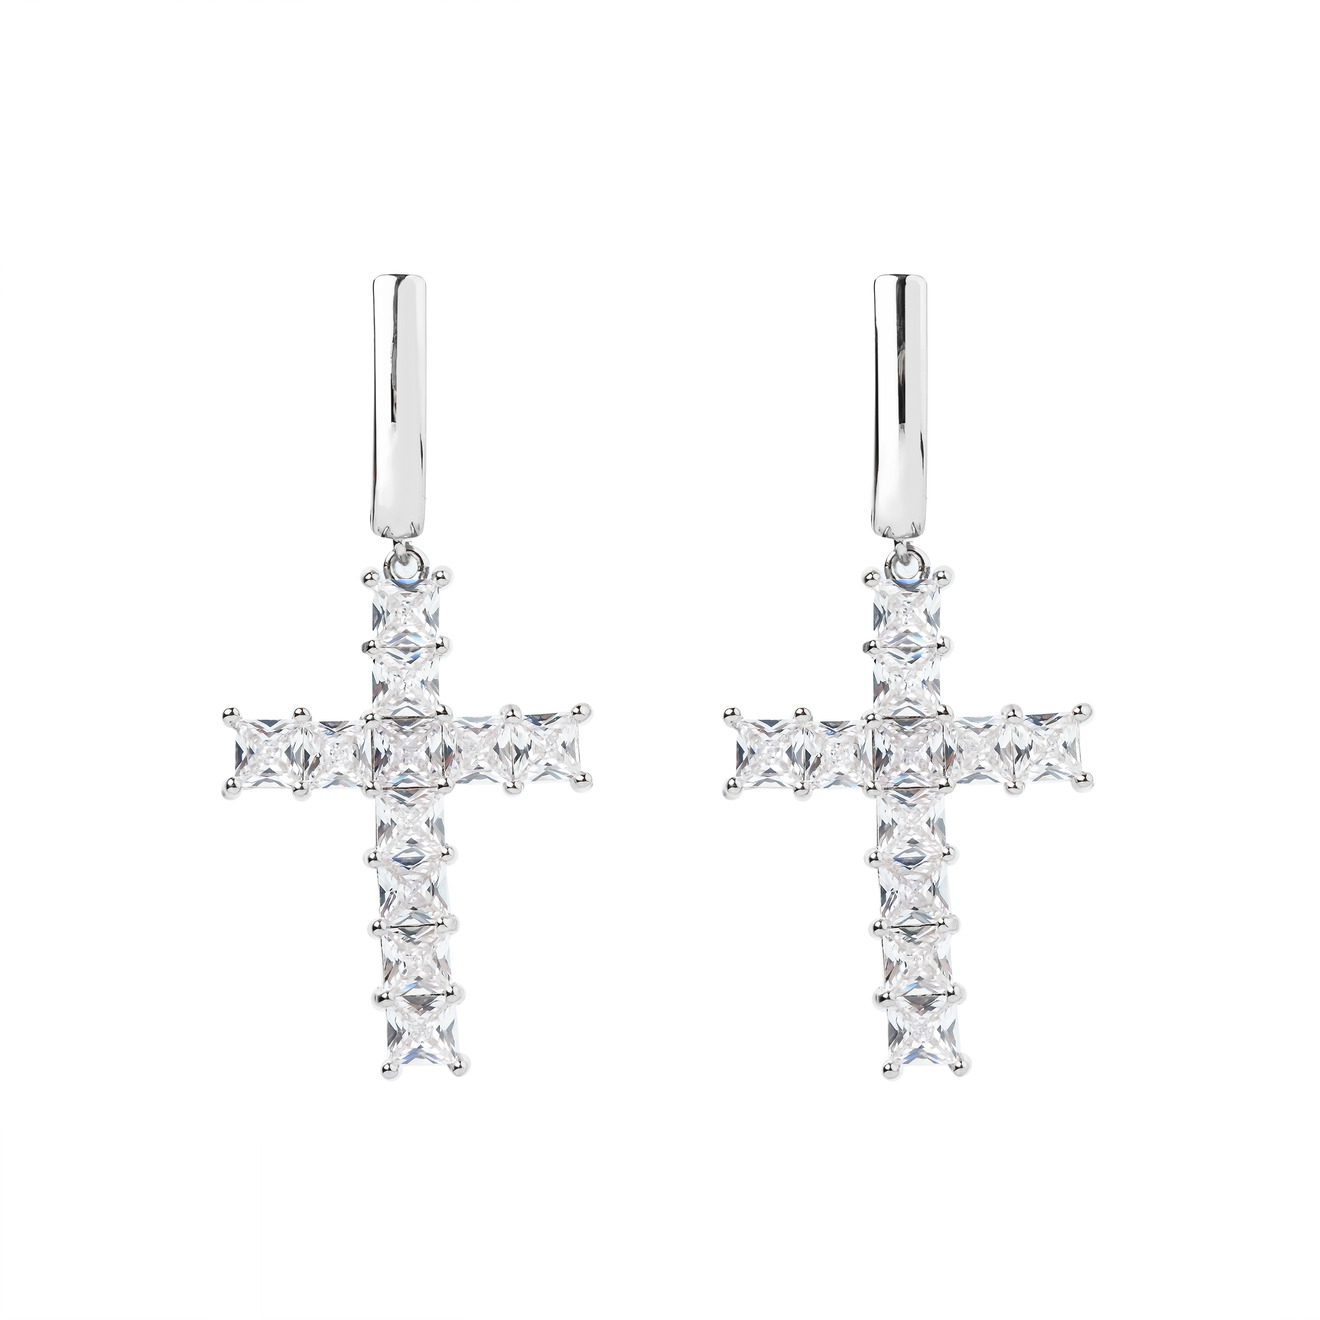 Herald Percy Серебристые серьги-кресты с кристаллами